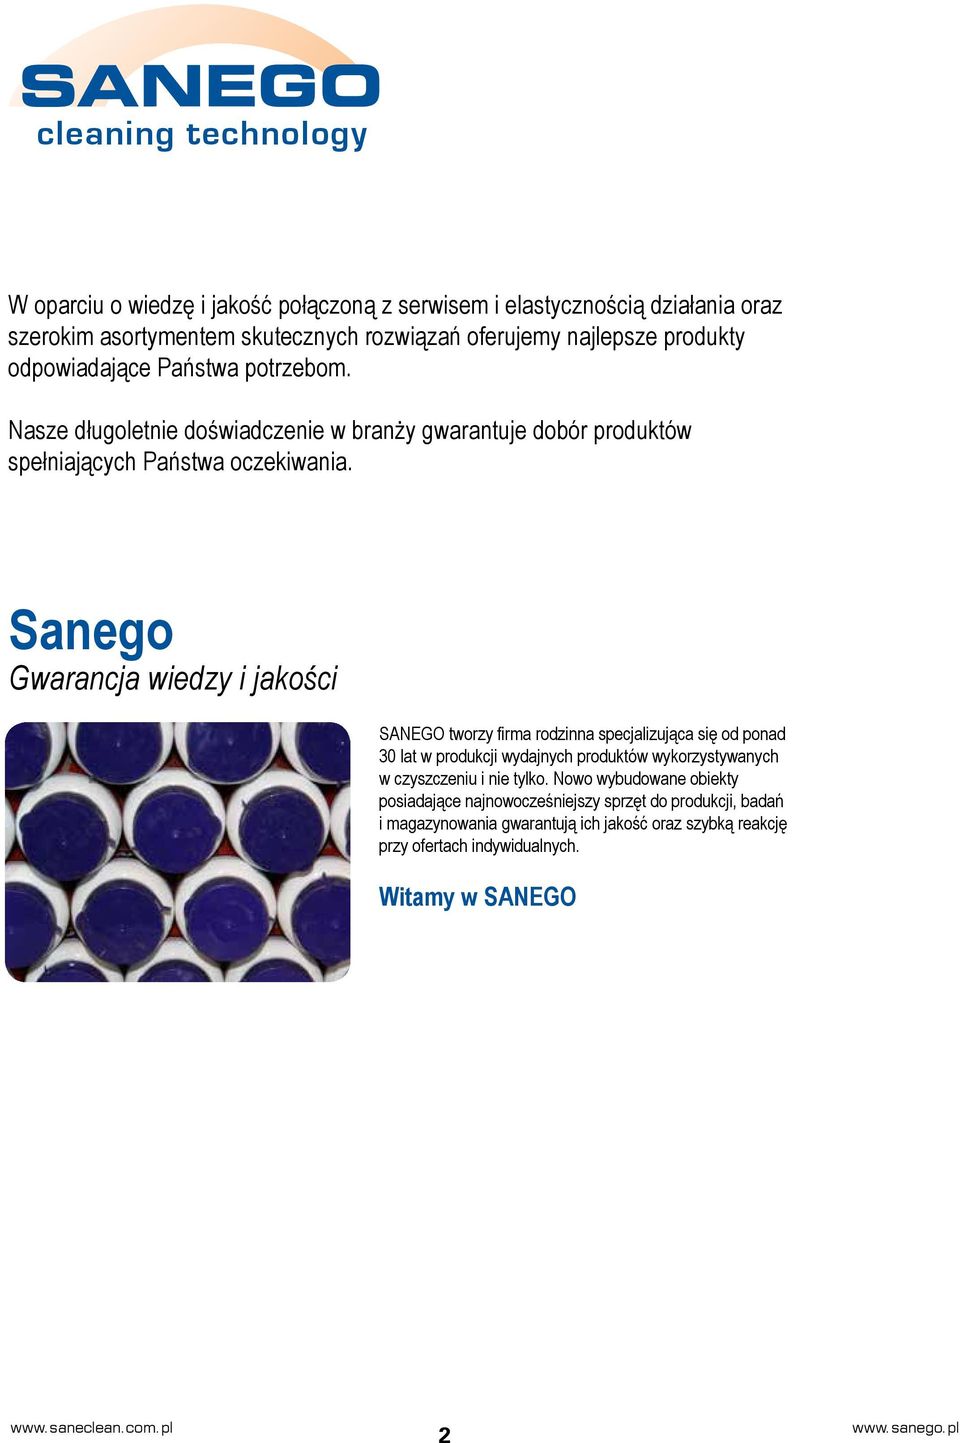 Sanego Gwarancja wiedzy i jakości SANEGO tworzy firma rodzinna specjalizująca się od ponad 30 lat w produkcji wydajnych produktów wykorzystywanych w czyszczeniu i nie tylko.